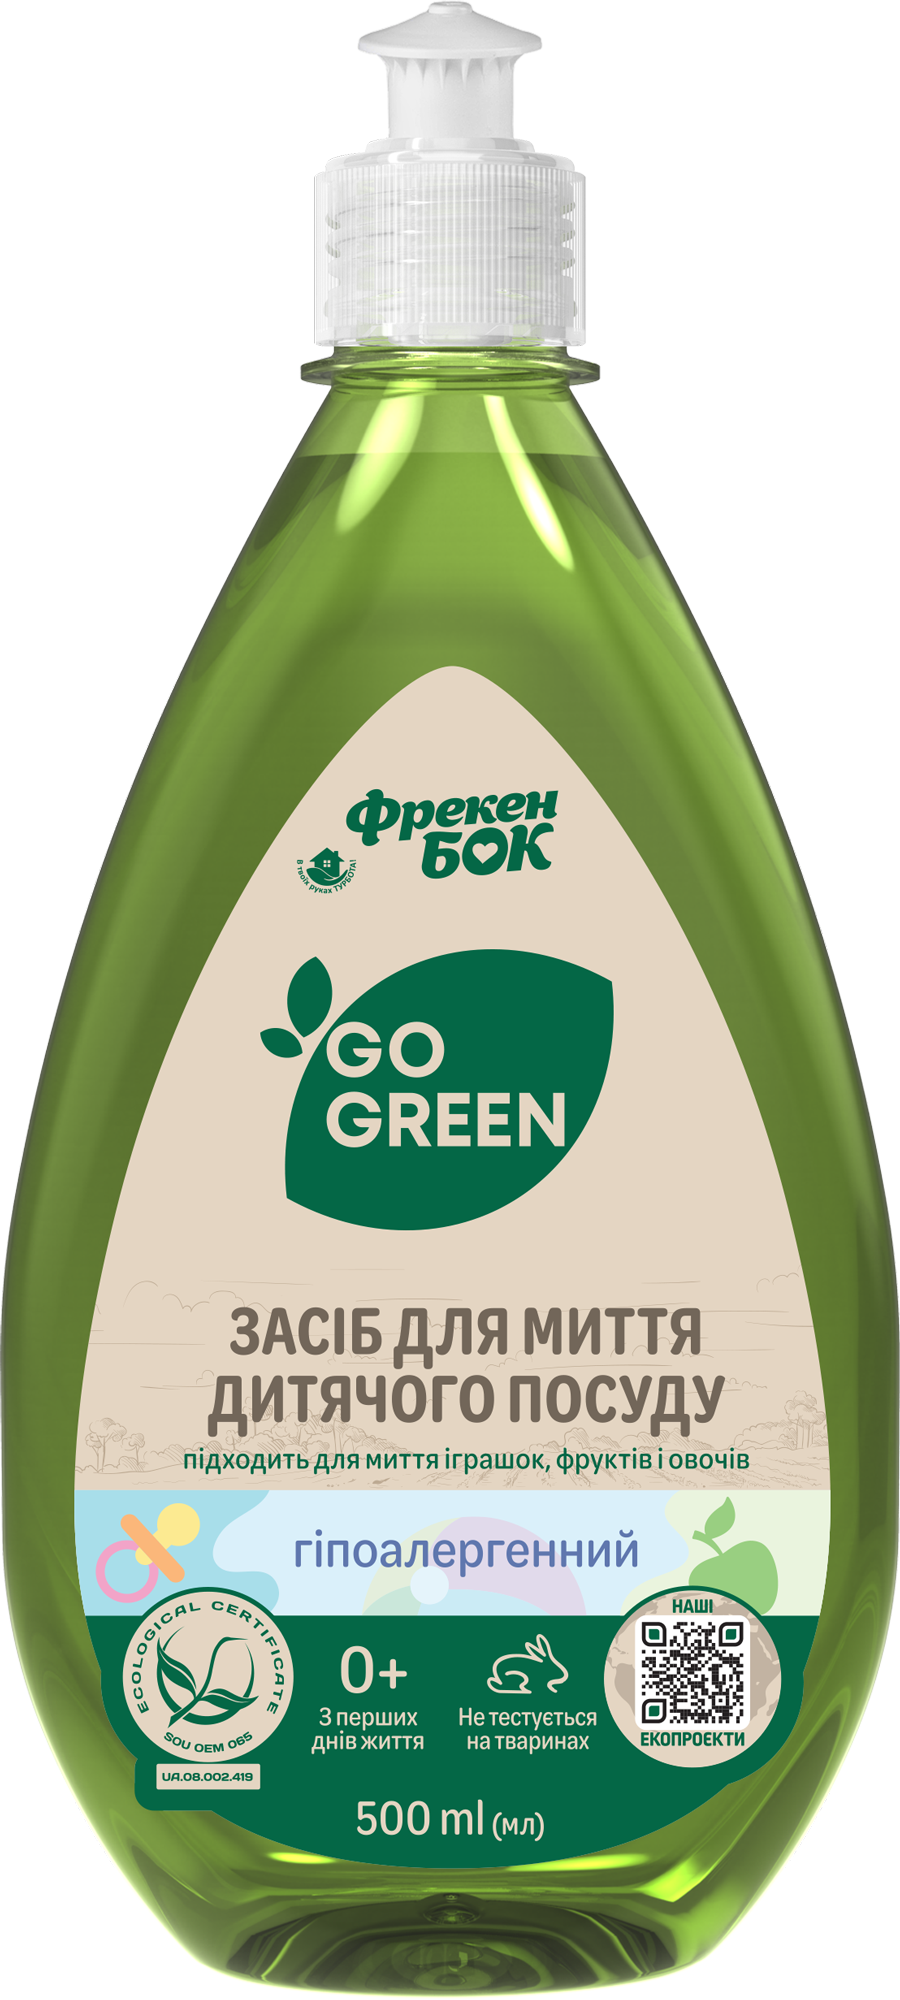 Гіпоалергенний засіб для миття посуду, дитячих іграшок, фруктів і овочів Фрекен Бок Go Green, 500 мл - фото 1